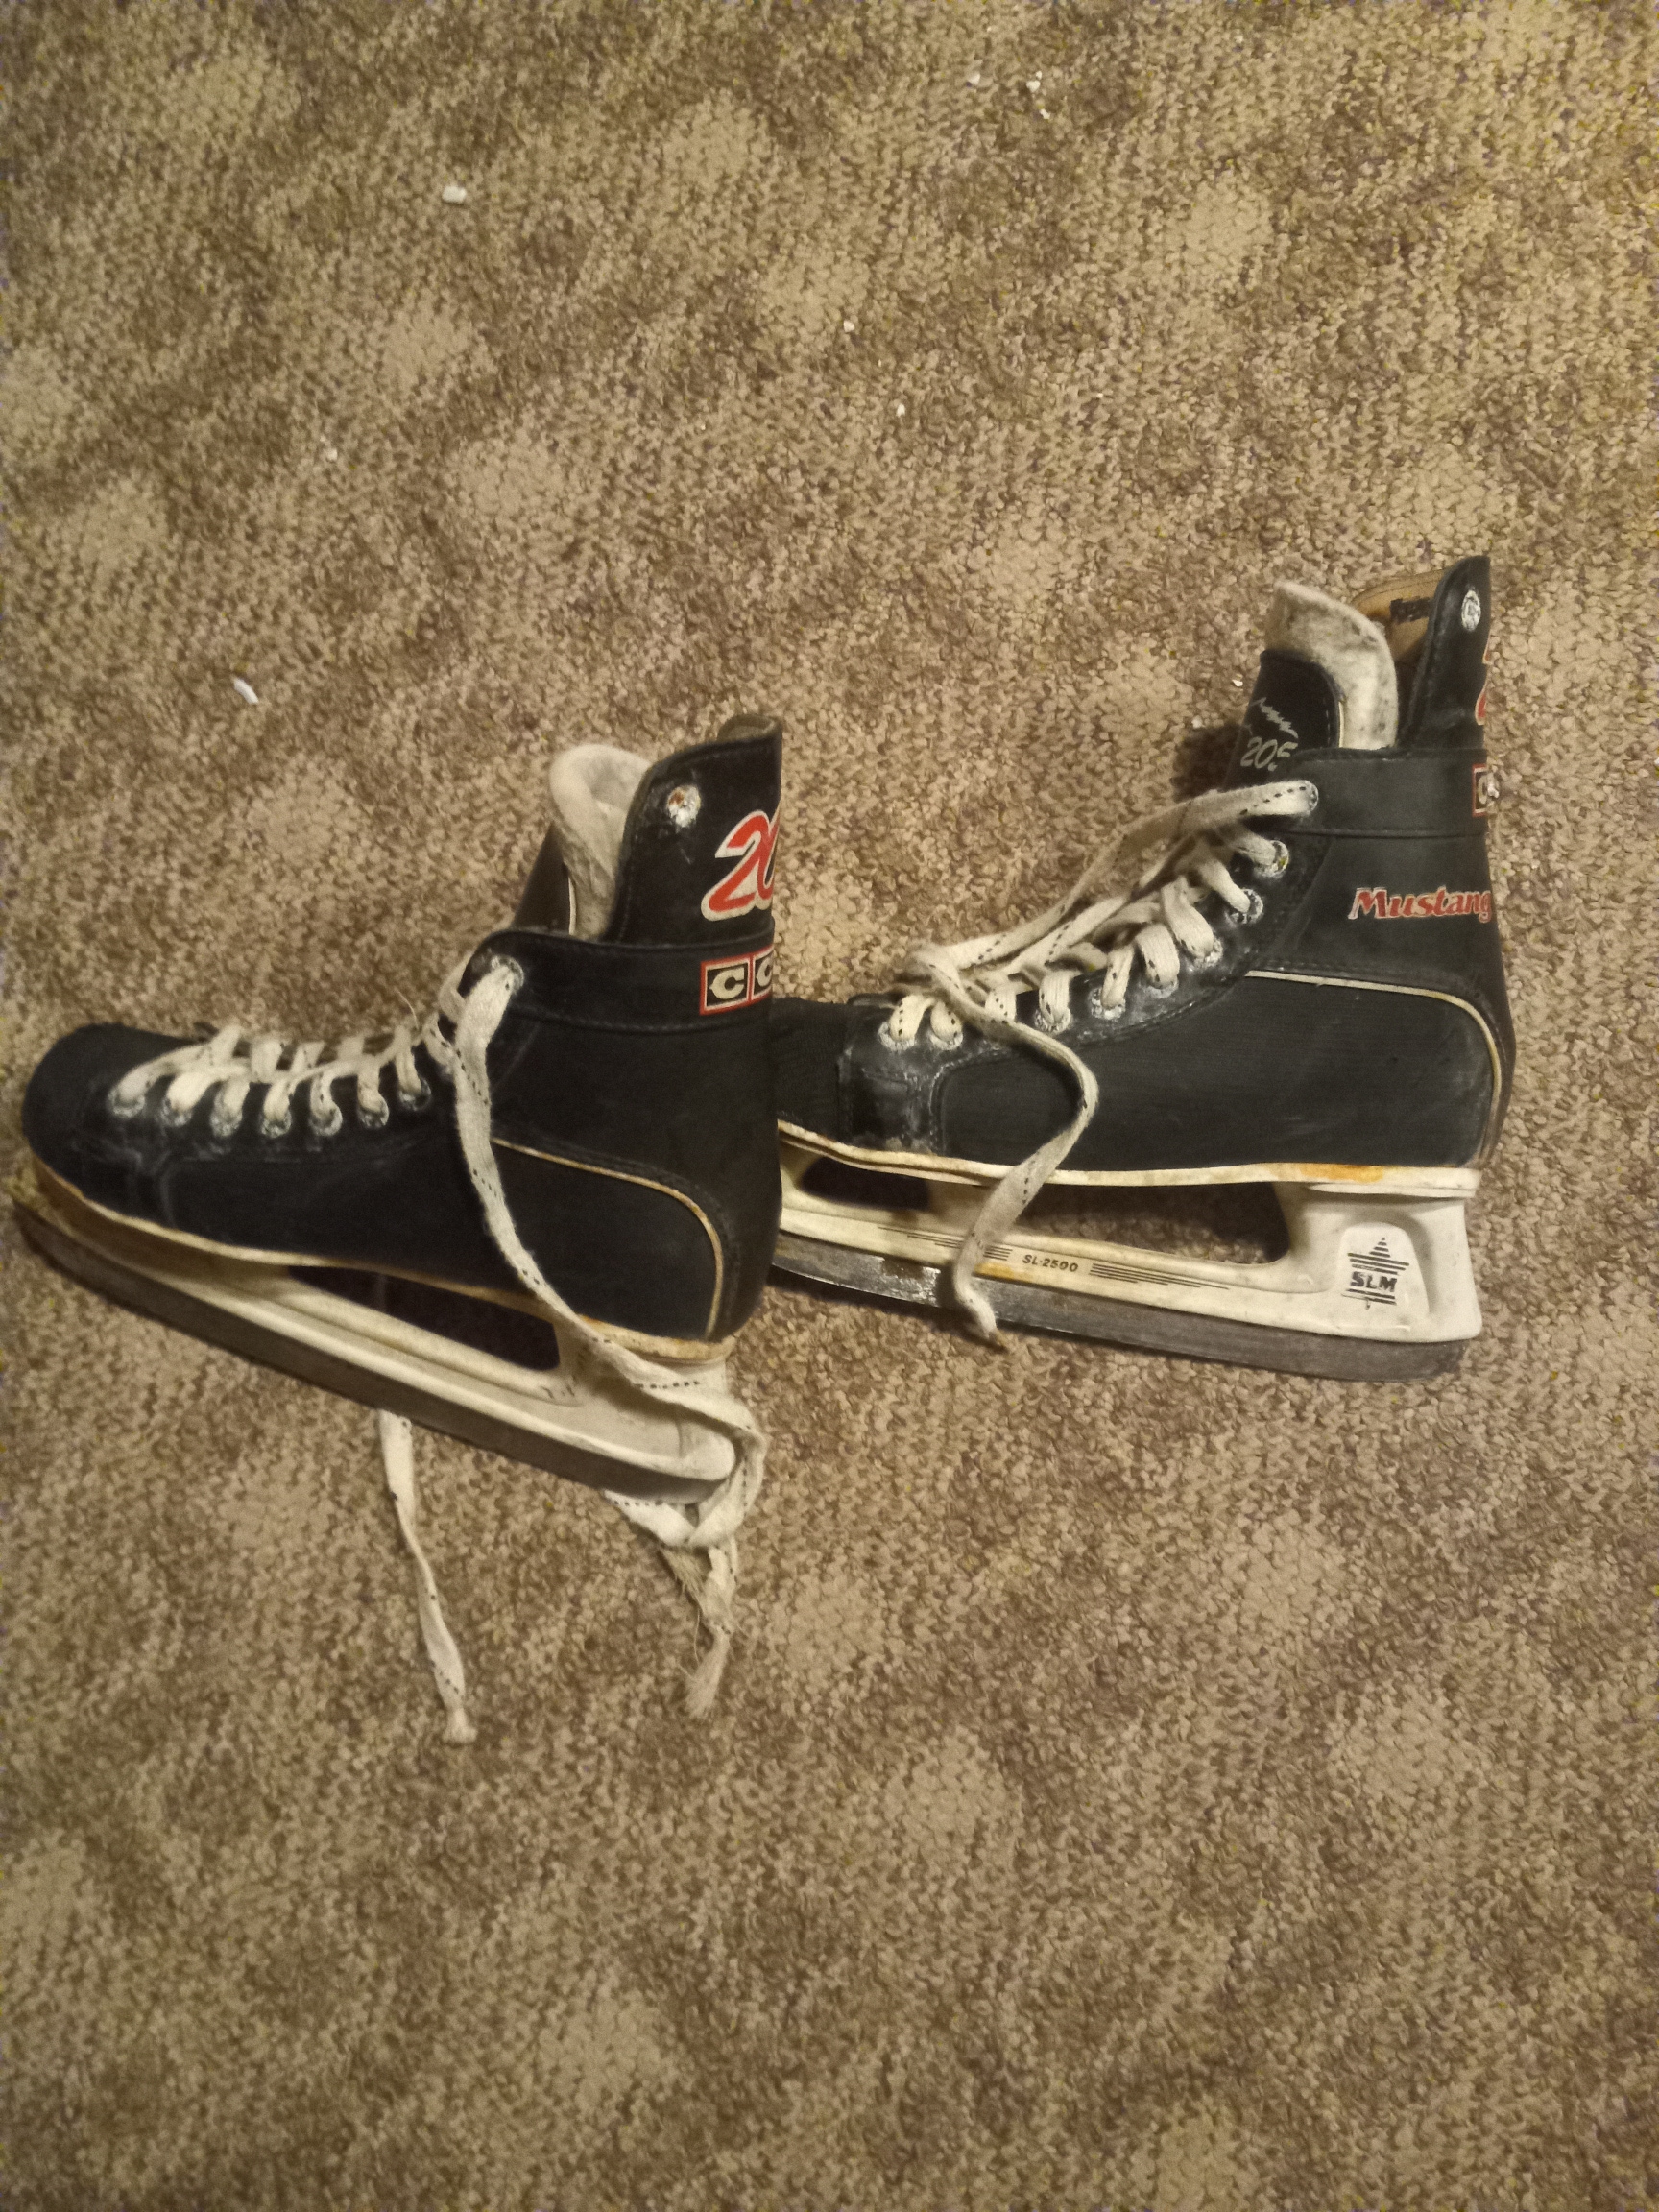 Used CCM size 9.5 Men's Hockey Skates